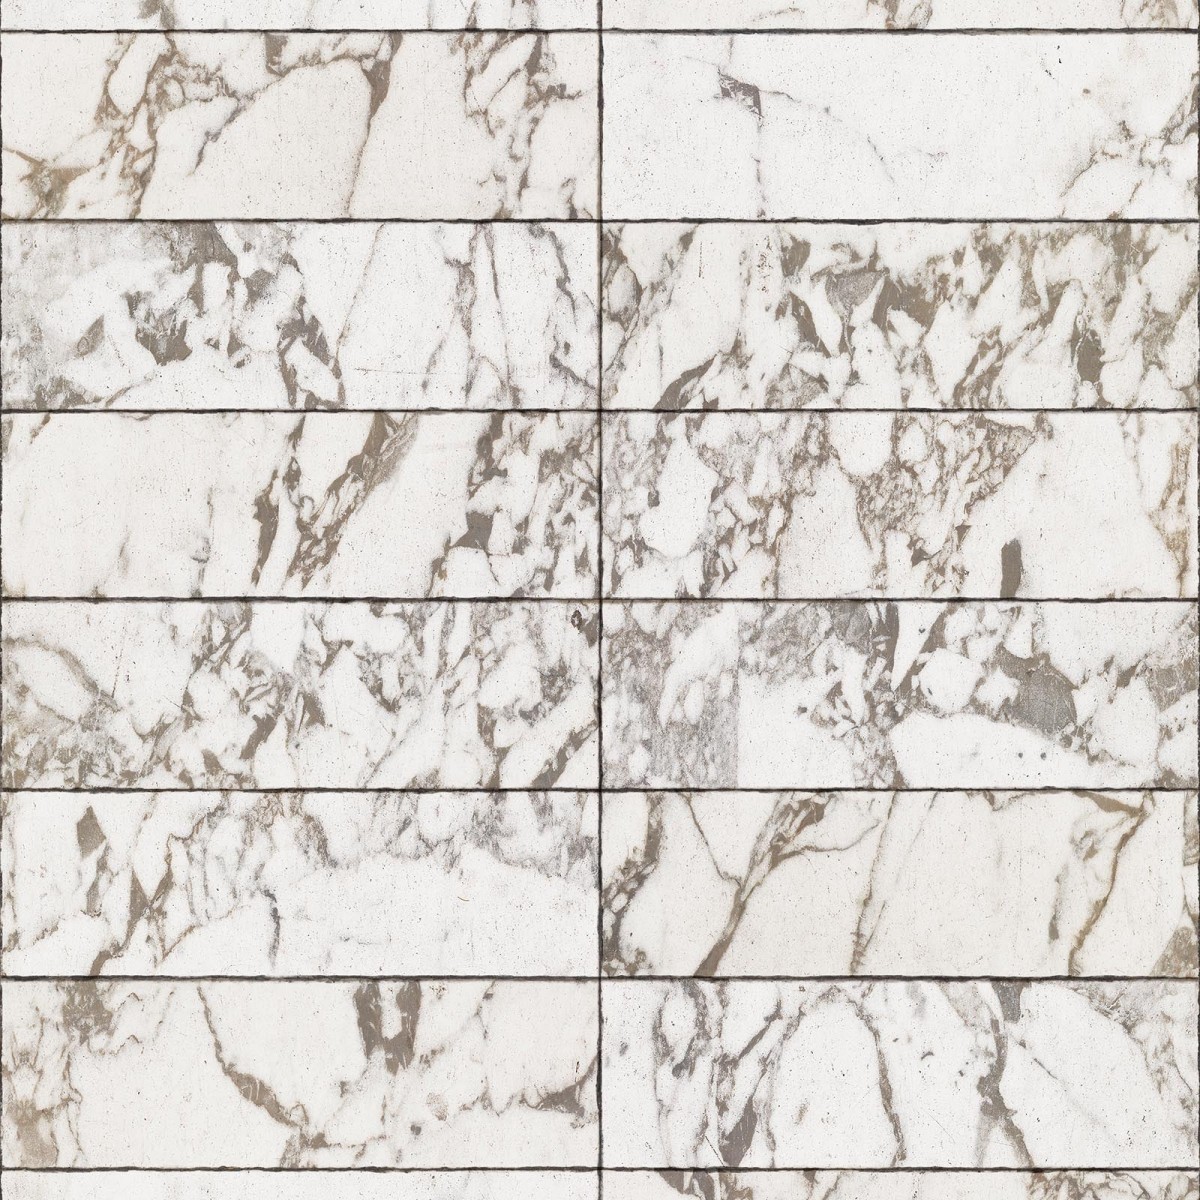 Tapet designer Materials Marble, Tiles 24.4x7.7cm, White by Piet Hein Eek, NLXL, 4.9mp / rola, Tapet Exclusivist 